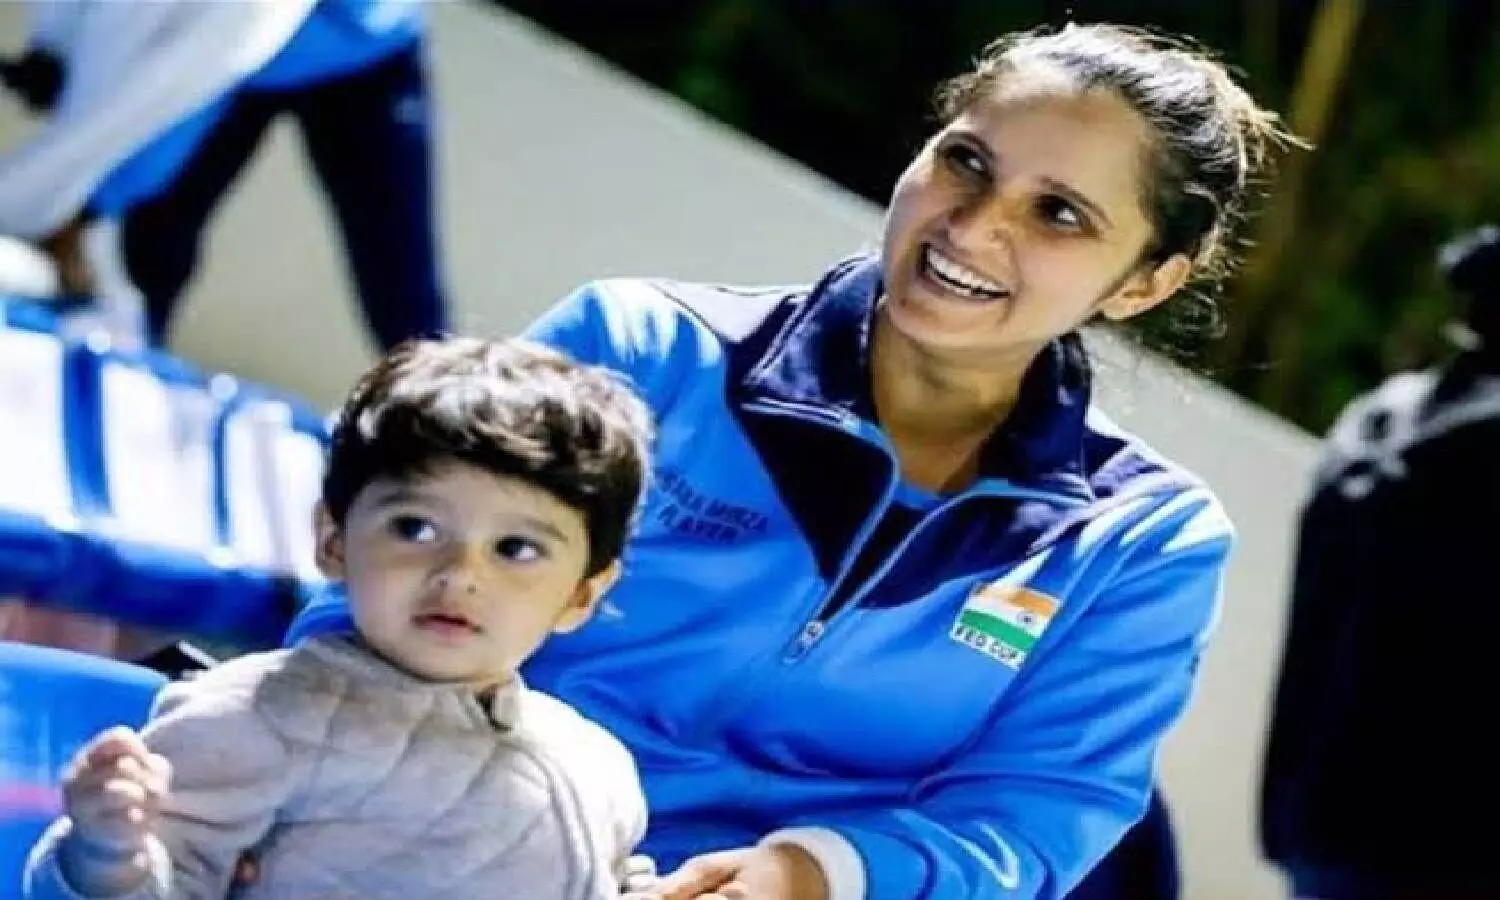 Tennis tourney: Centre approaches UK govt for visa to Sania Mirzas 2YO son